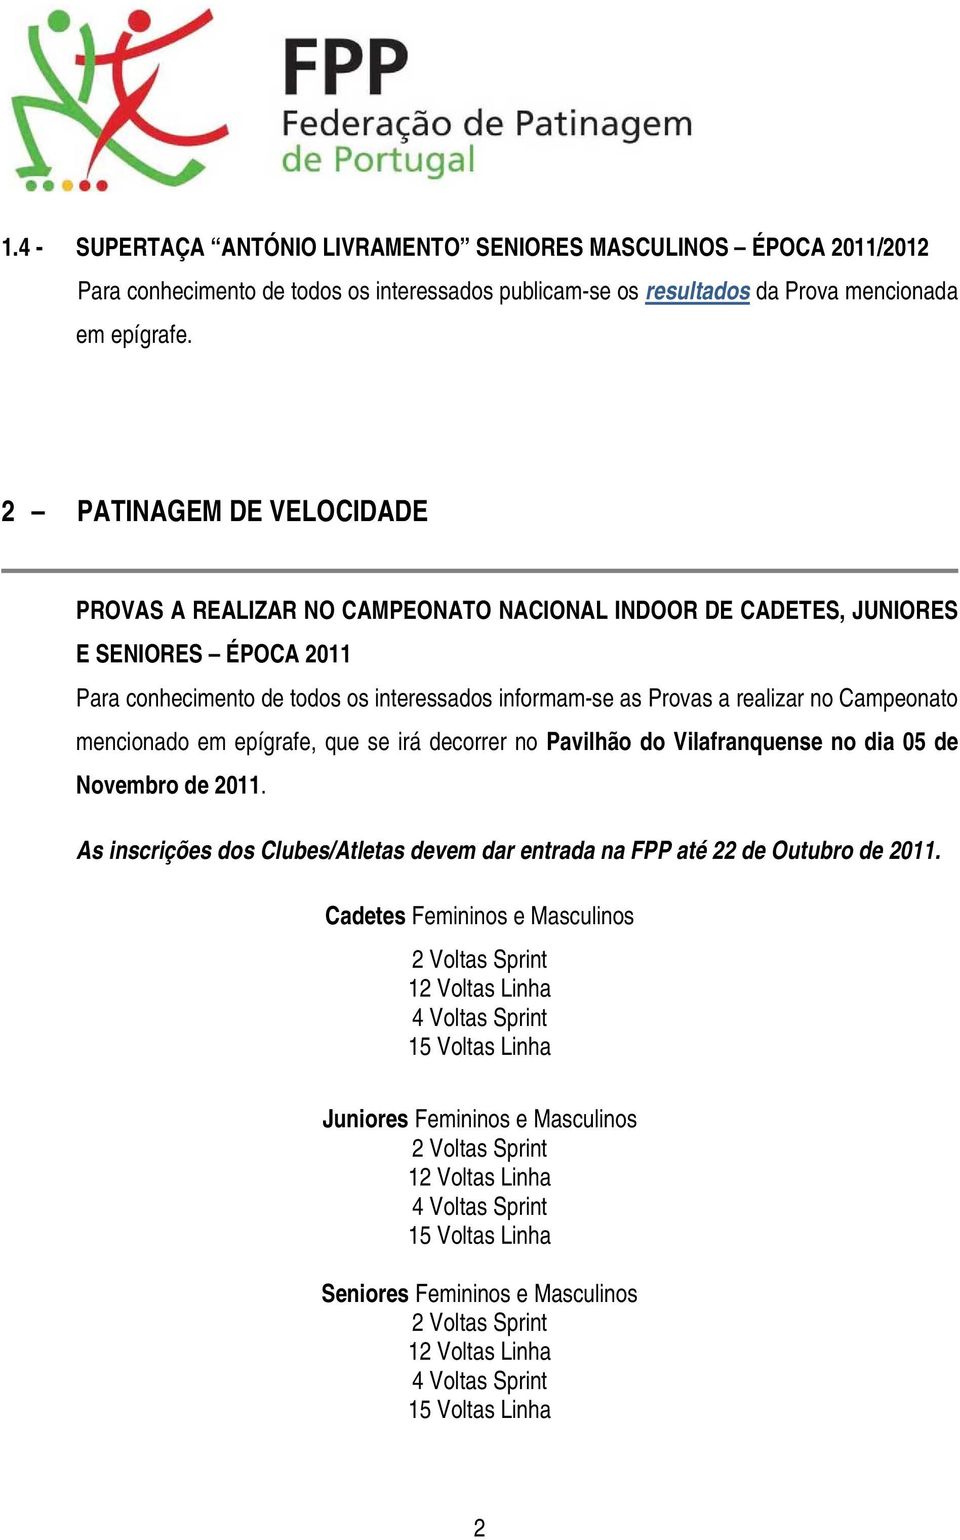 Campeonato mencionado em epígrafe, que se irá decorrer no Pavilhão do Vilafranquense no dia 05 de Novembro de 2011. As inscrições dos Clubes/Atletas devem dar entrada na FPP até 22 de Outubro de 2011.